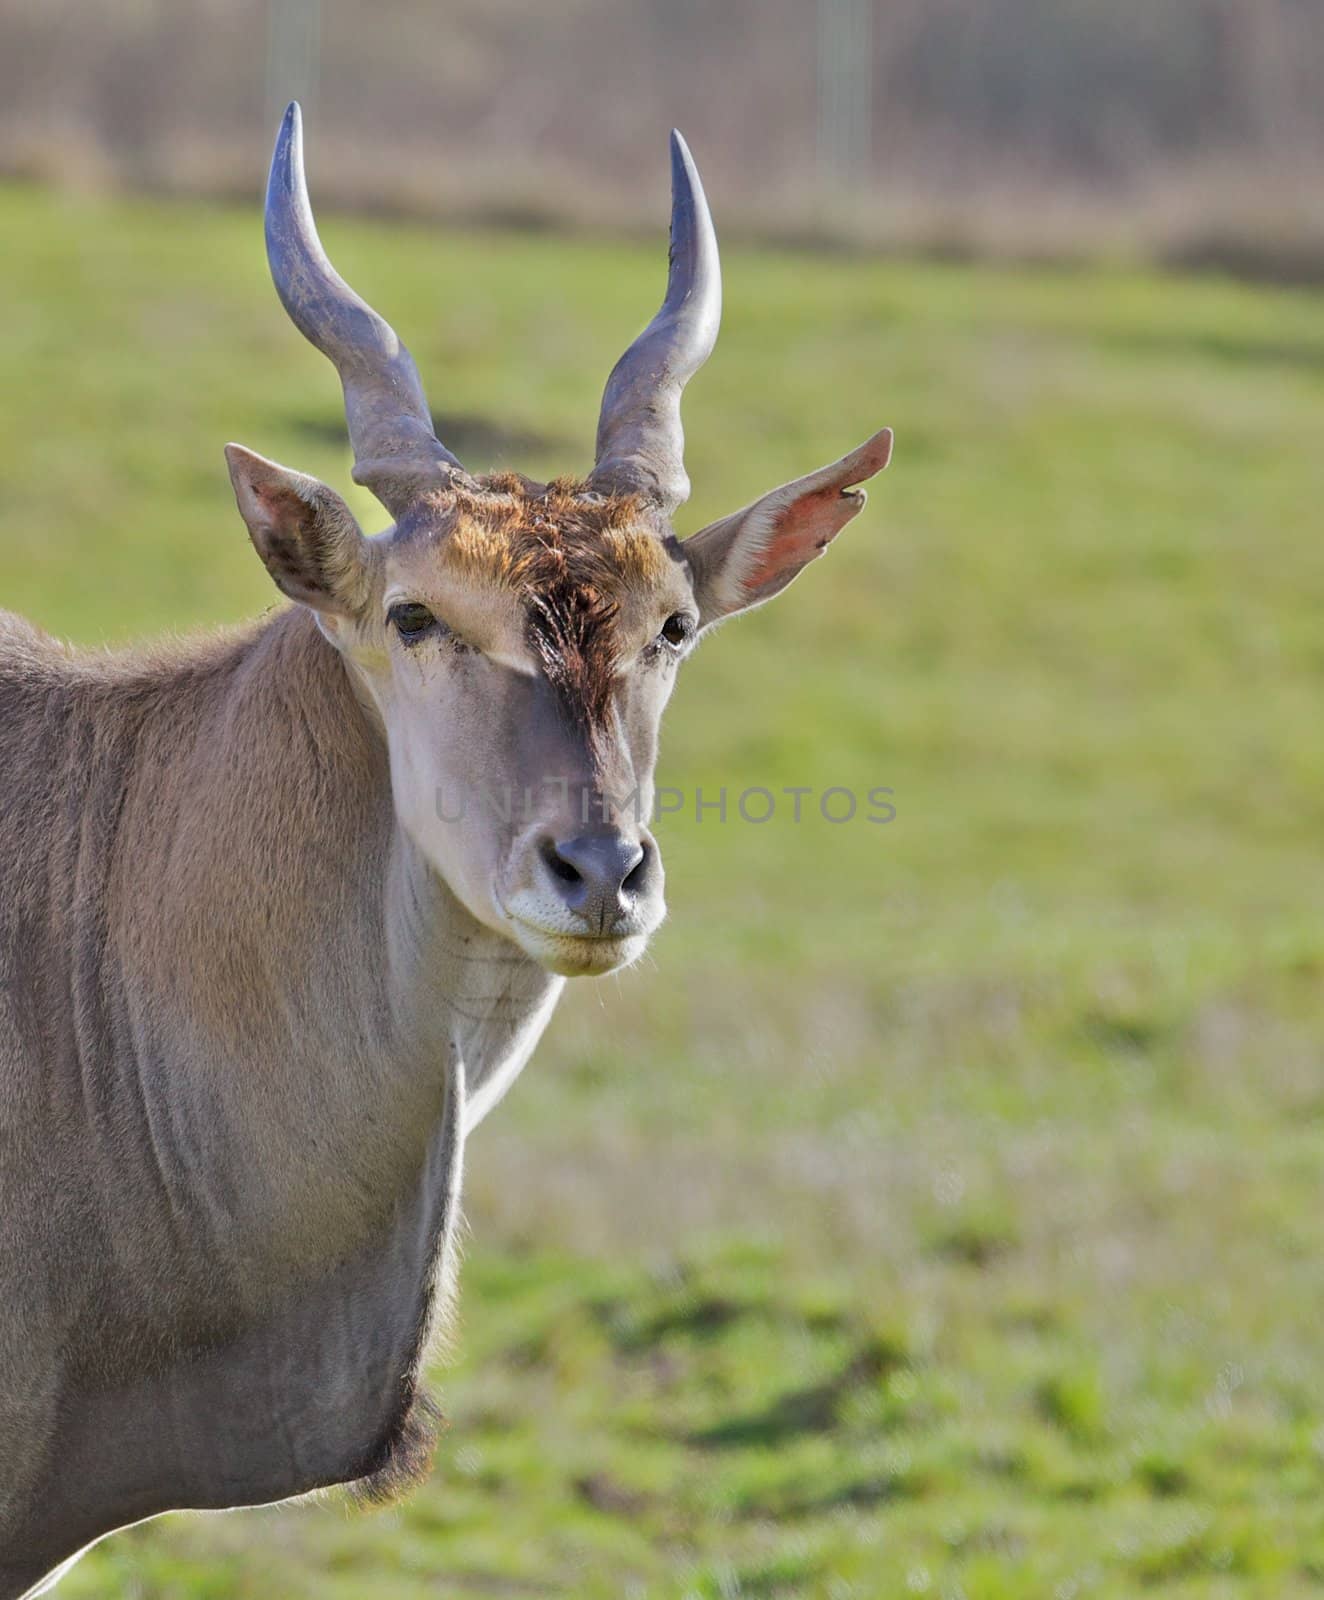 Antelope Head green field by bobkeenan